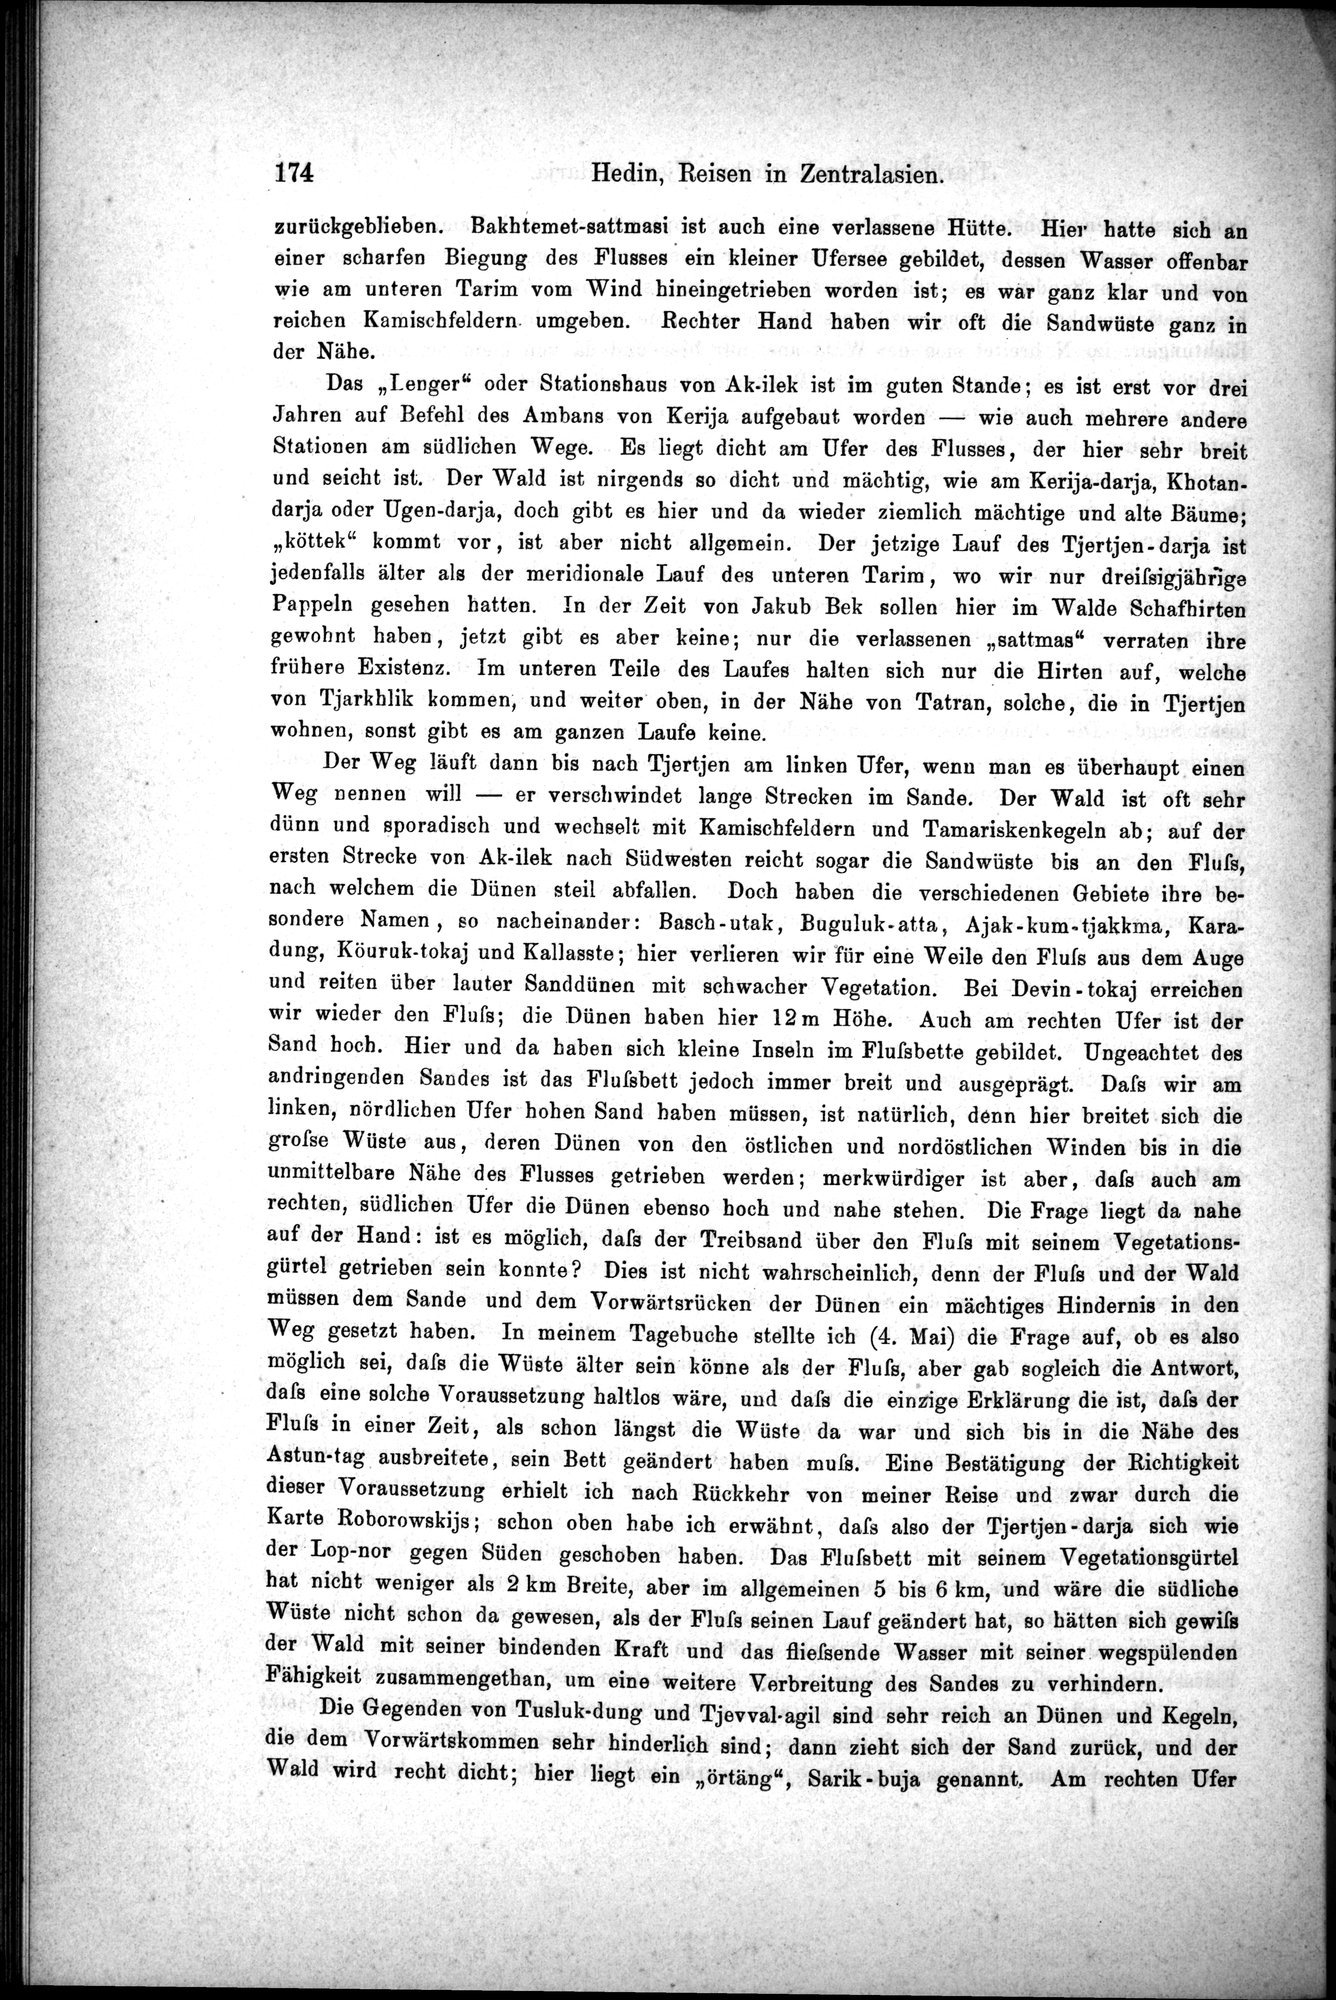 Die Geographische-Wissenschaftlichen Ergebnisse meiner Reisen in Zentralasien, 1894-1897 : vol.1 / Page 186 (Grayscale High Resolution Image)